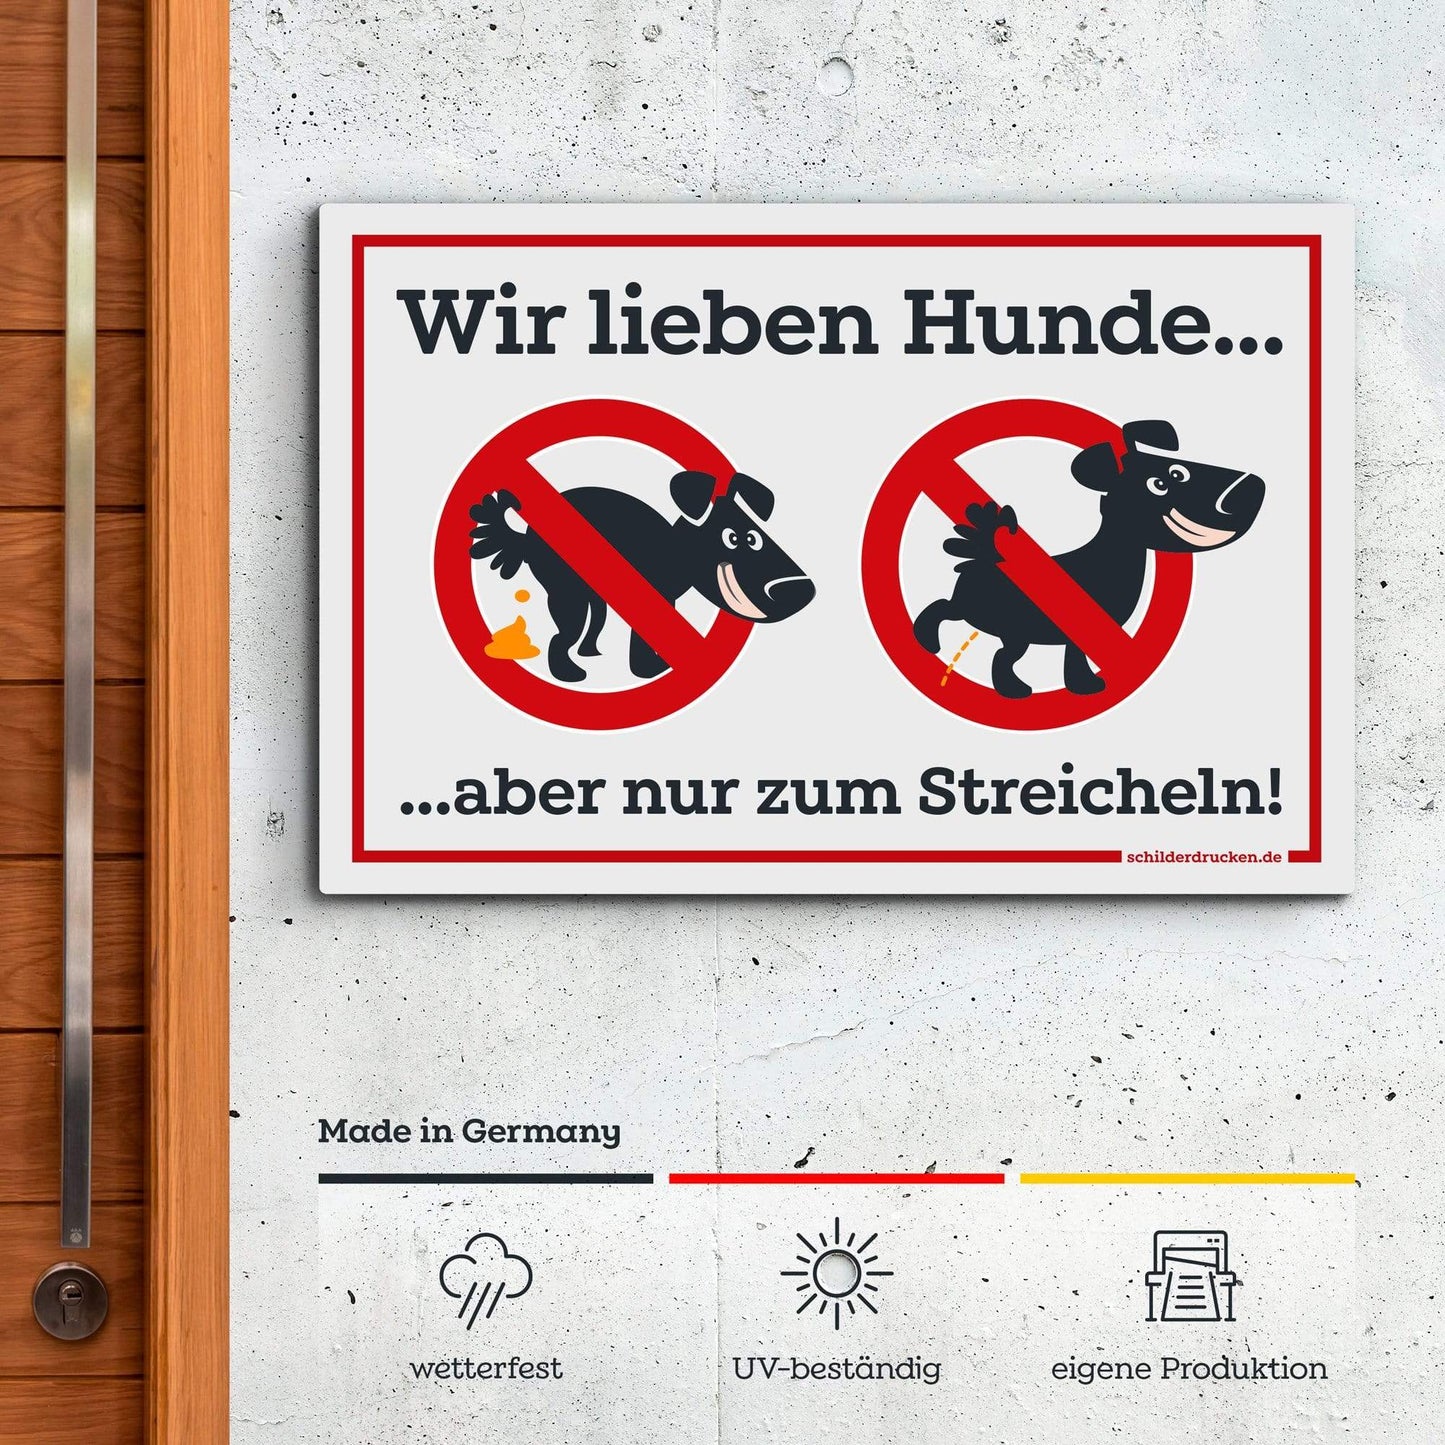 Kein Hundeklo - wir lieben Hunde! 10 x 15 cm / weiss / Alu-Dibond online drucken lassen bei schilderdrucken.de